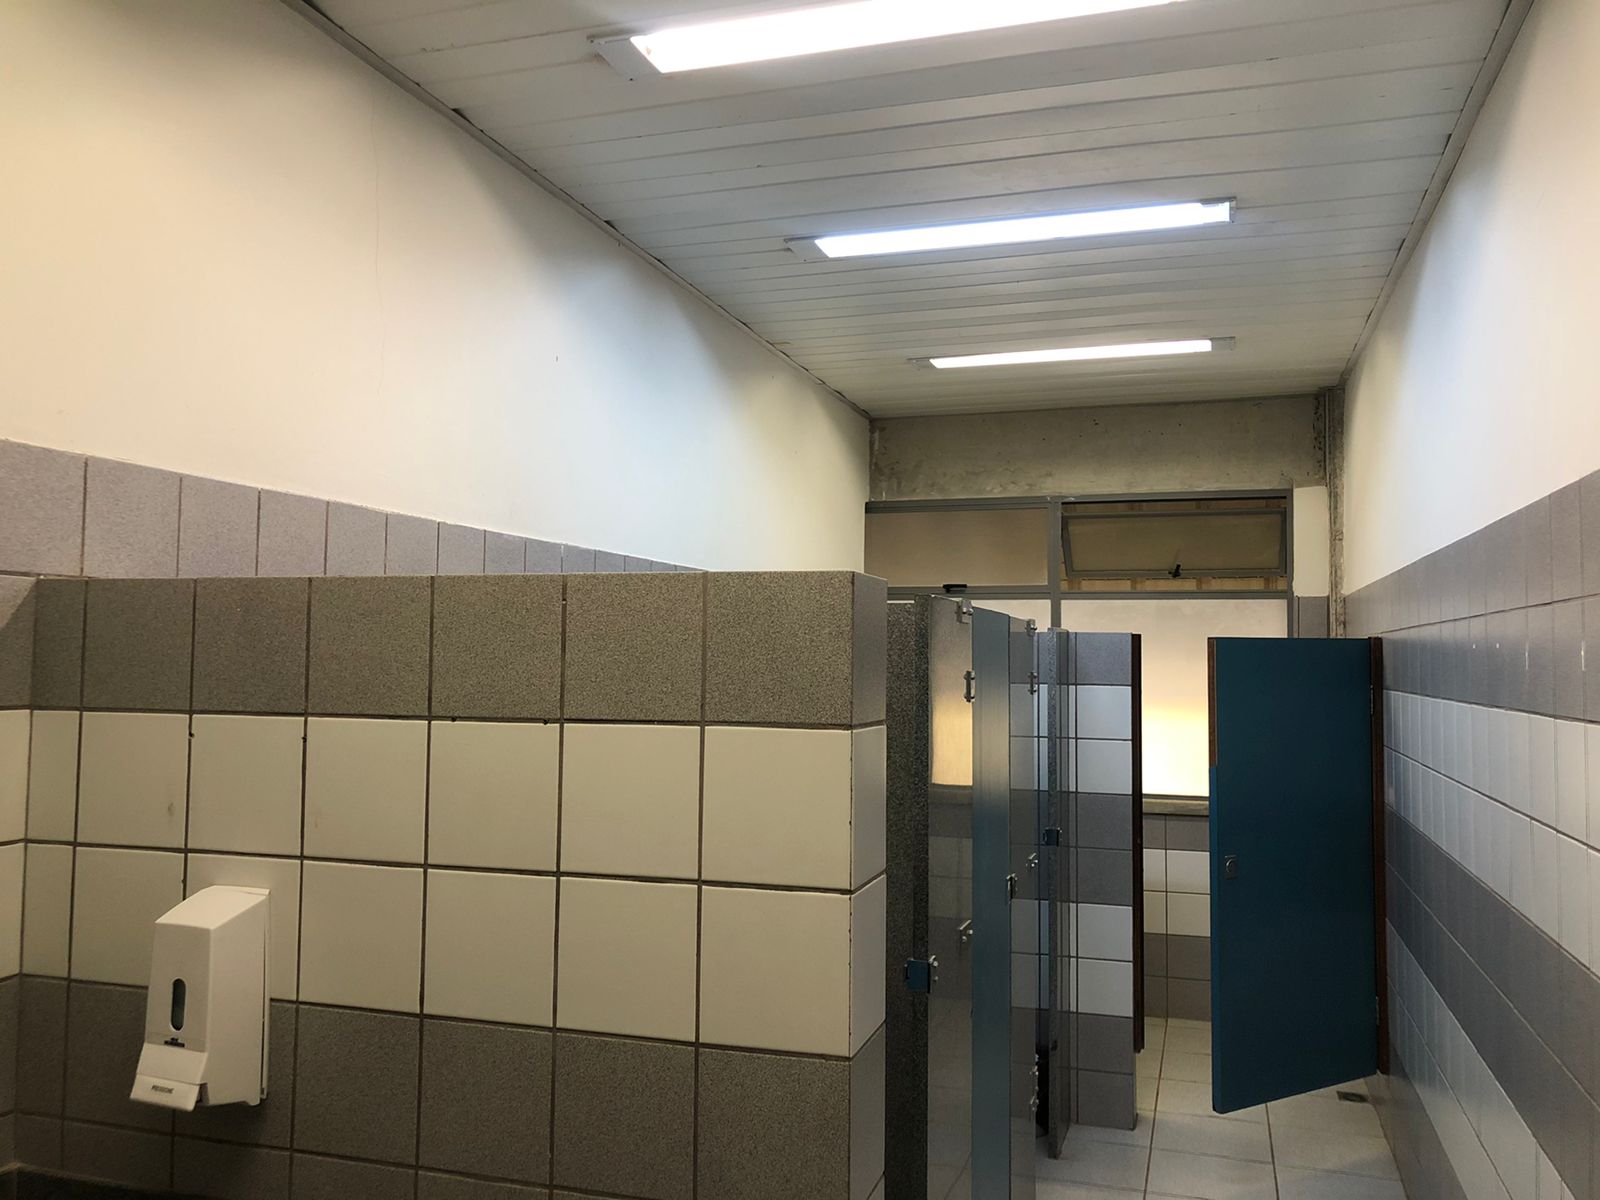 Estrutura do banheiro onde as estudantes teriam sido filmadas